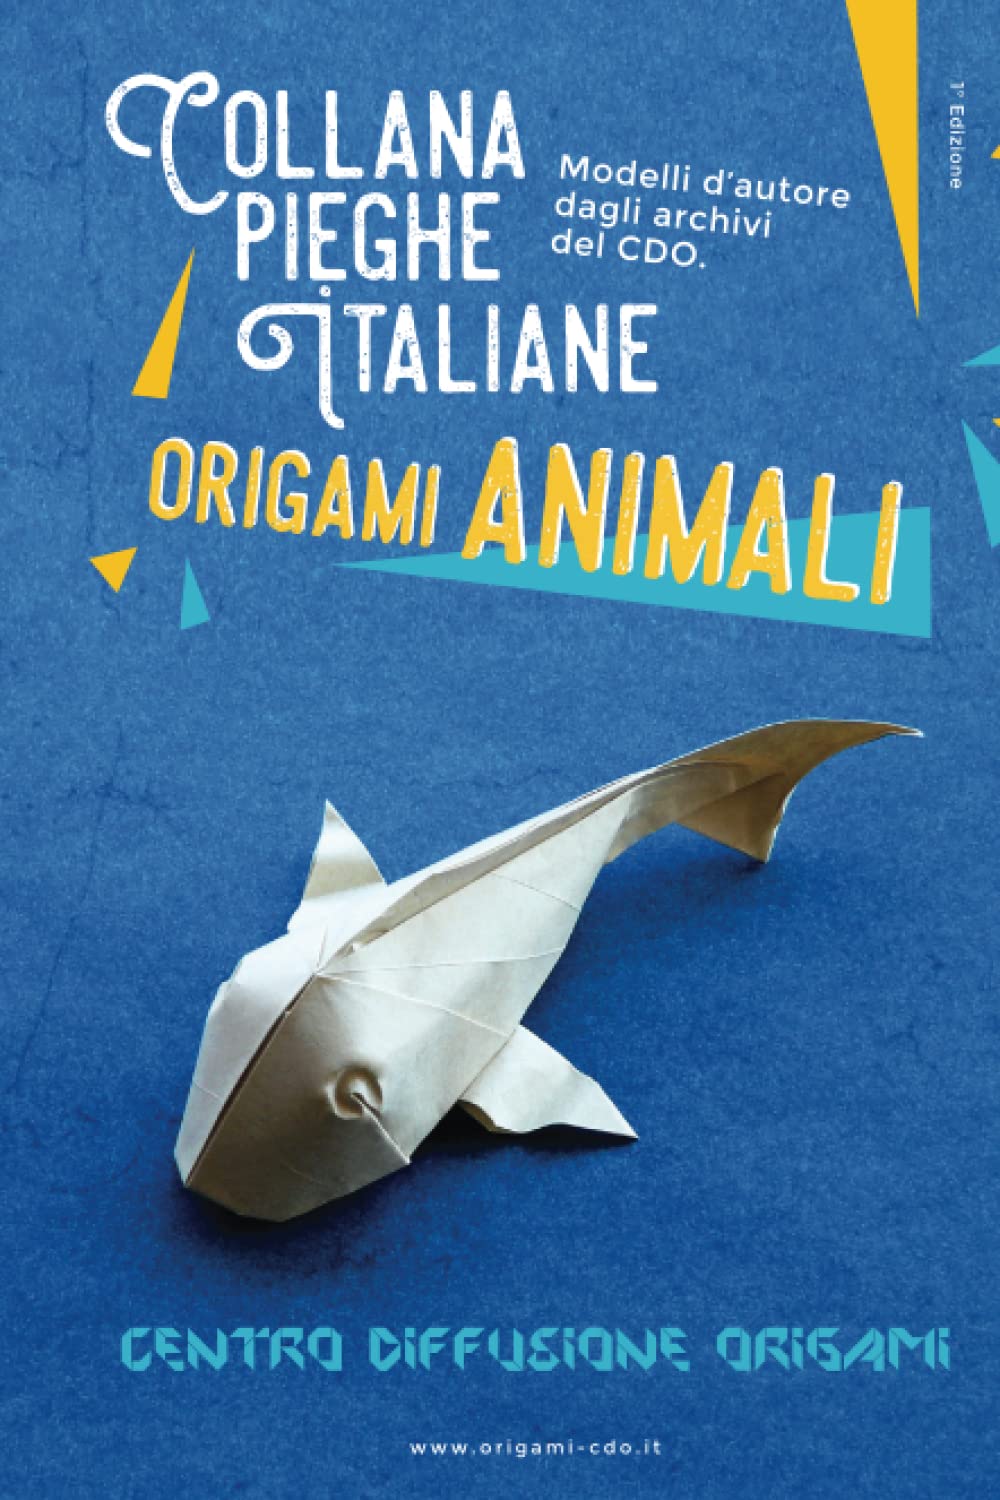 Collana pieghe Italiane - origami ANIMALI : page 20.